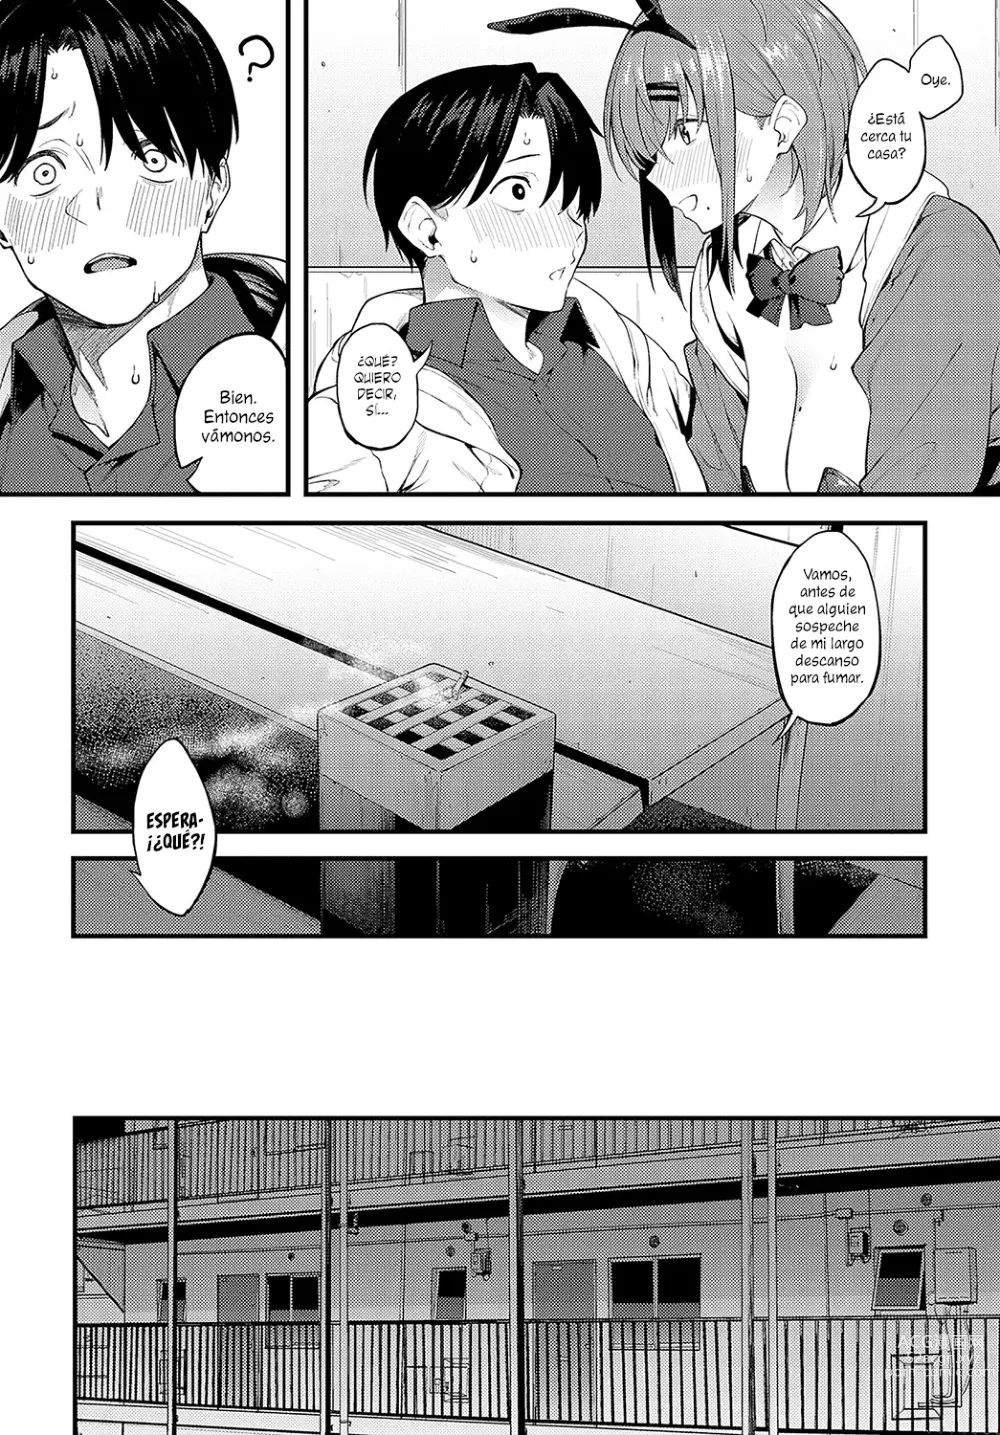 Page 6 of manga Como Conejos